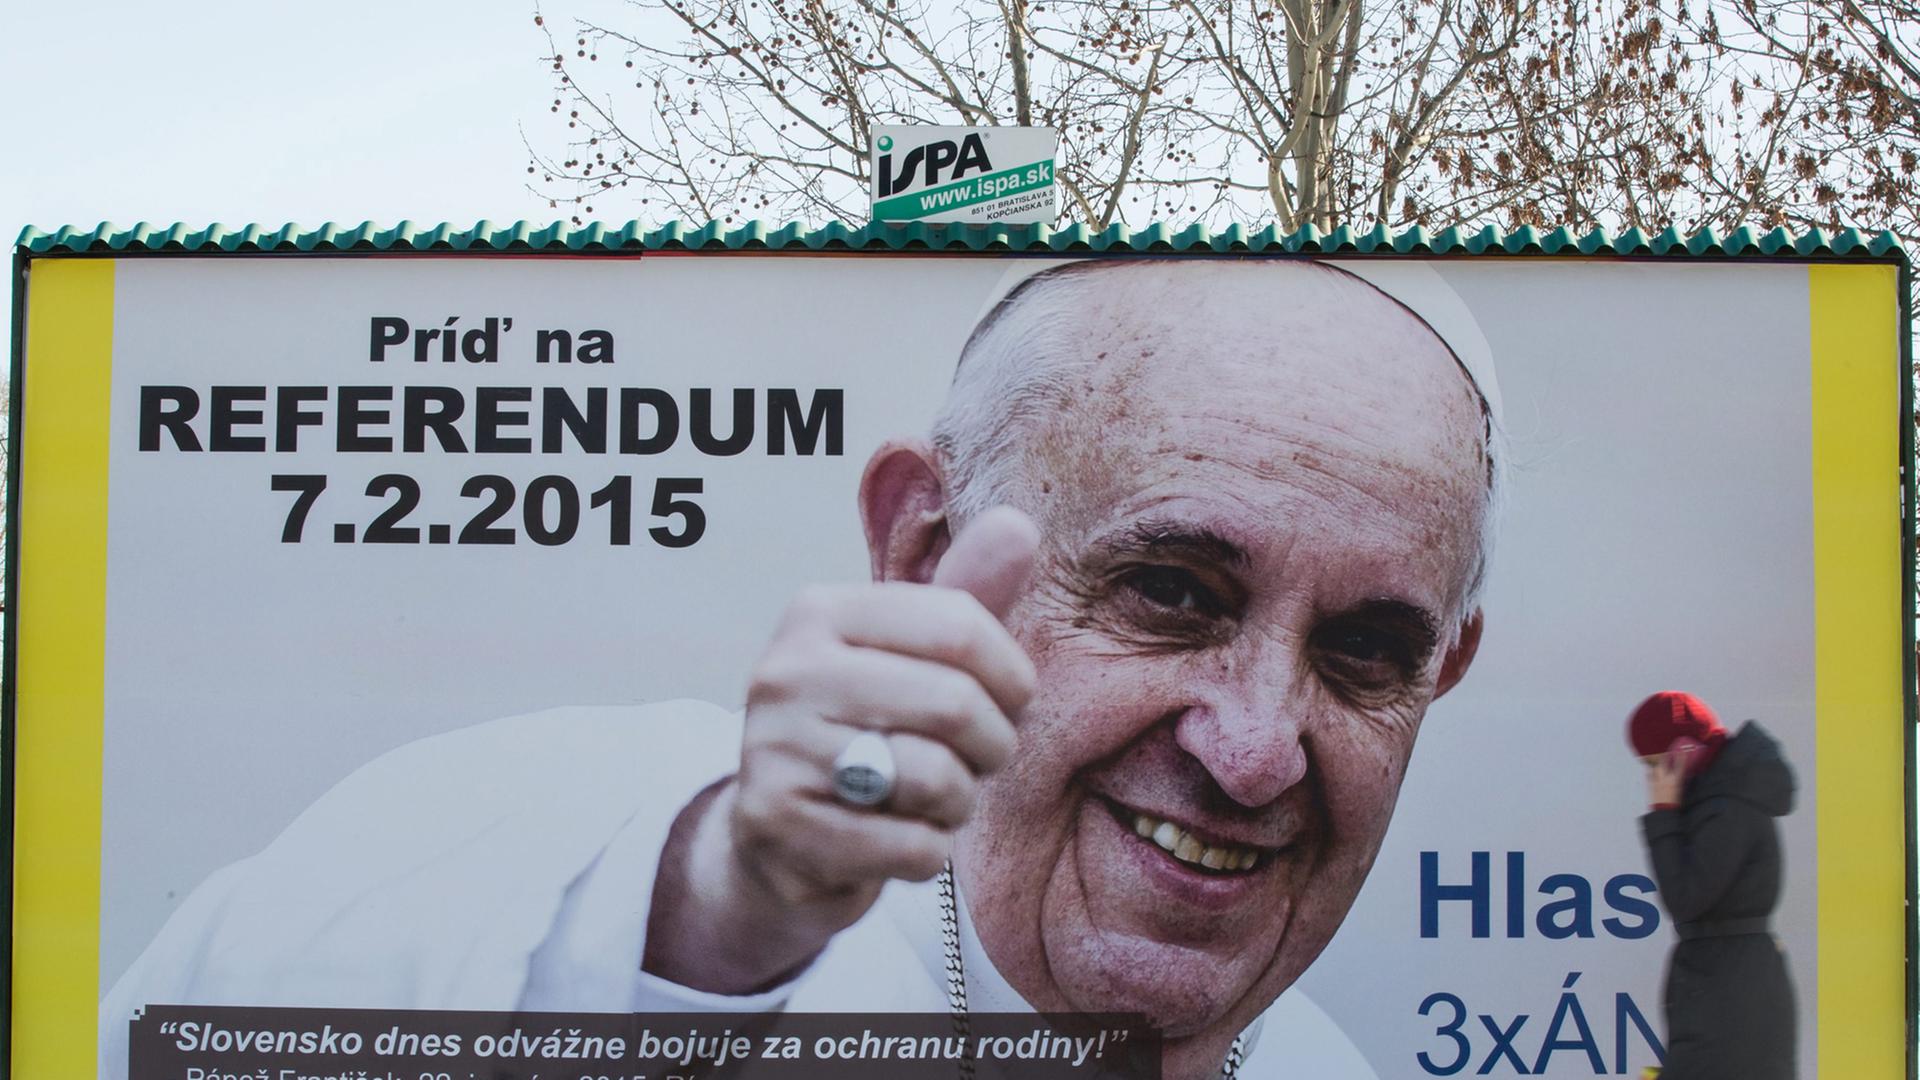 Werbeplakat für das Referendum mit Bild und Zitat von Papst Franziskus, davor geht eine Frau vorbei.